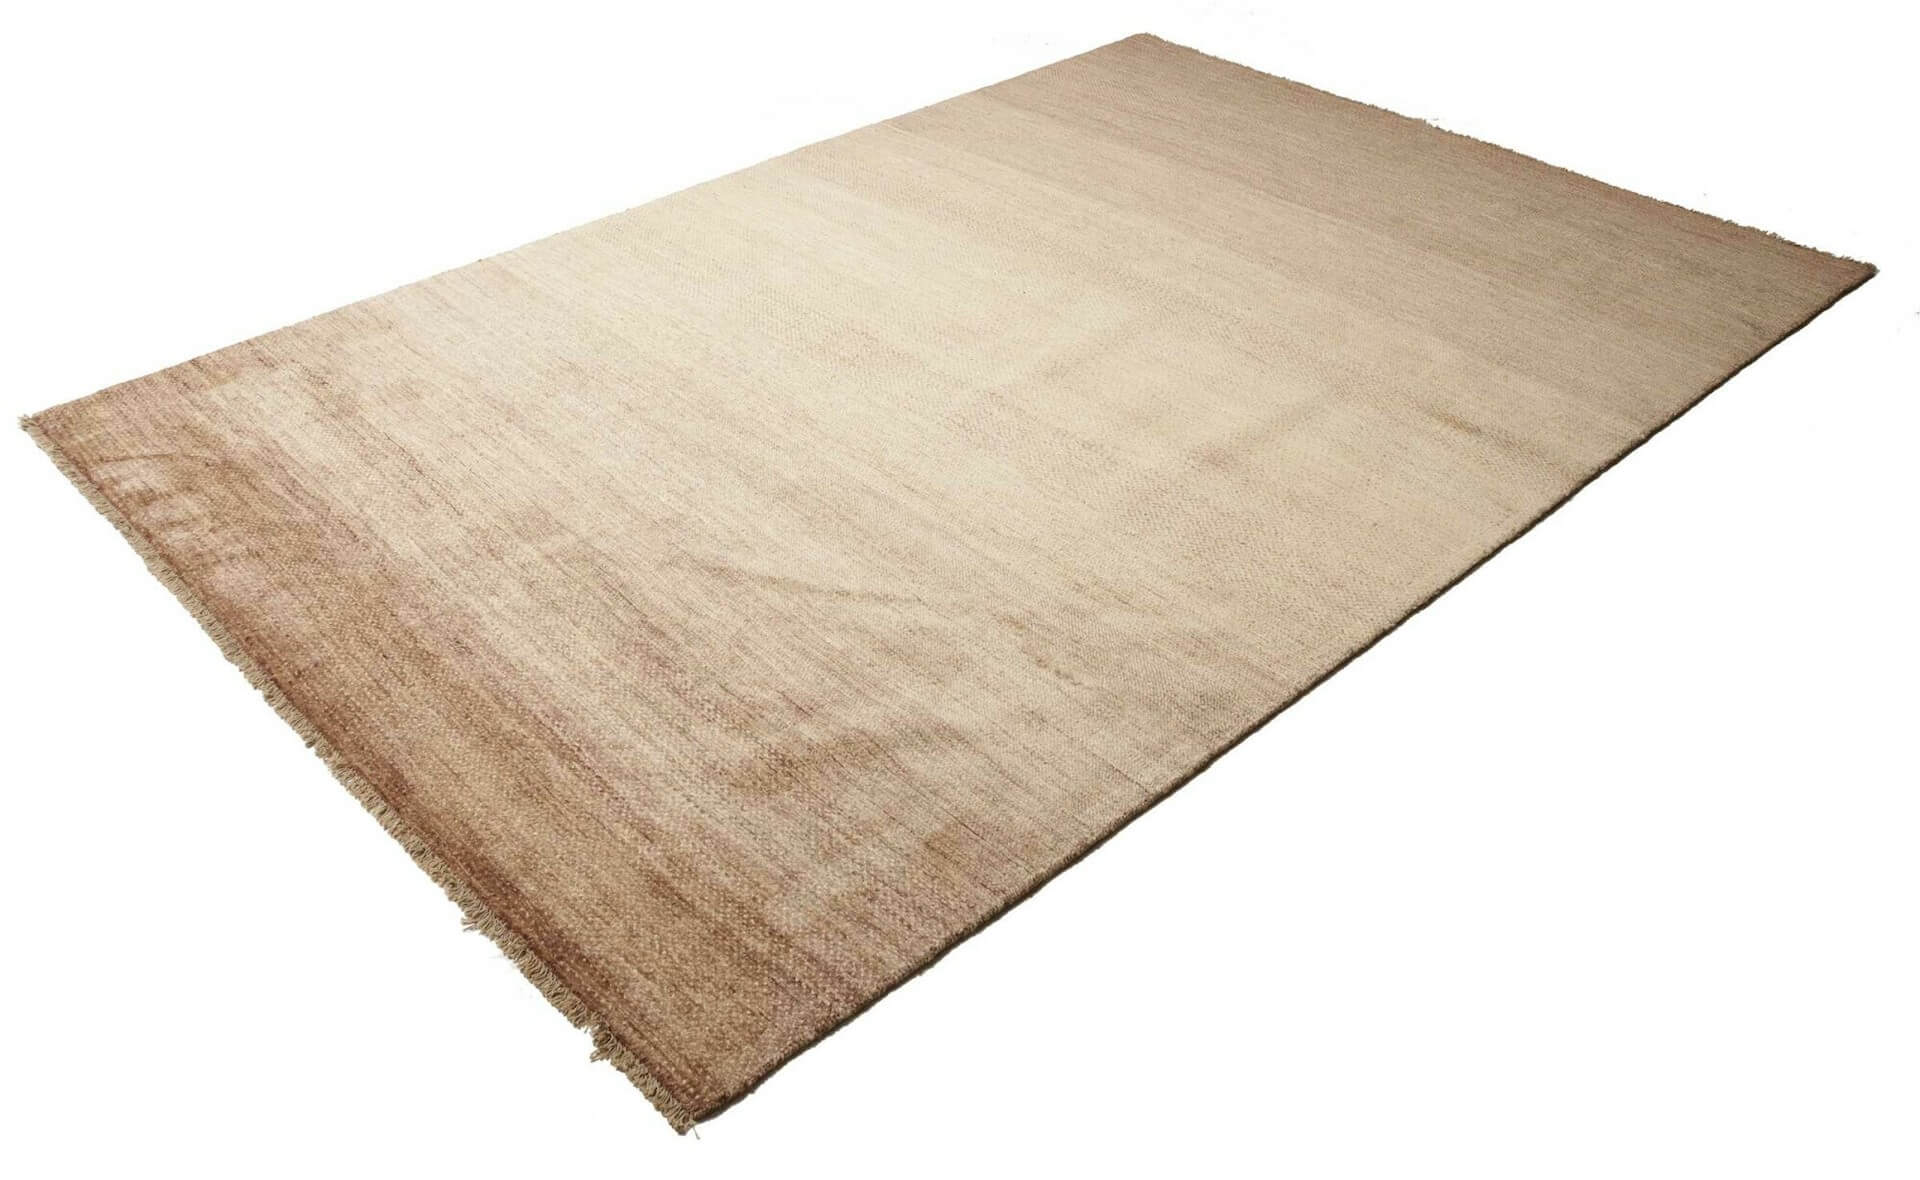 Afghanteppich Shayan, handgeknüpft aus Schurwolle, beige/braun, 197 x 296 cm, Schrägansicht